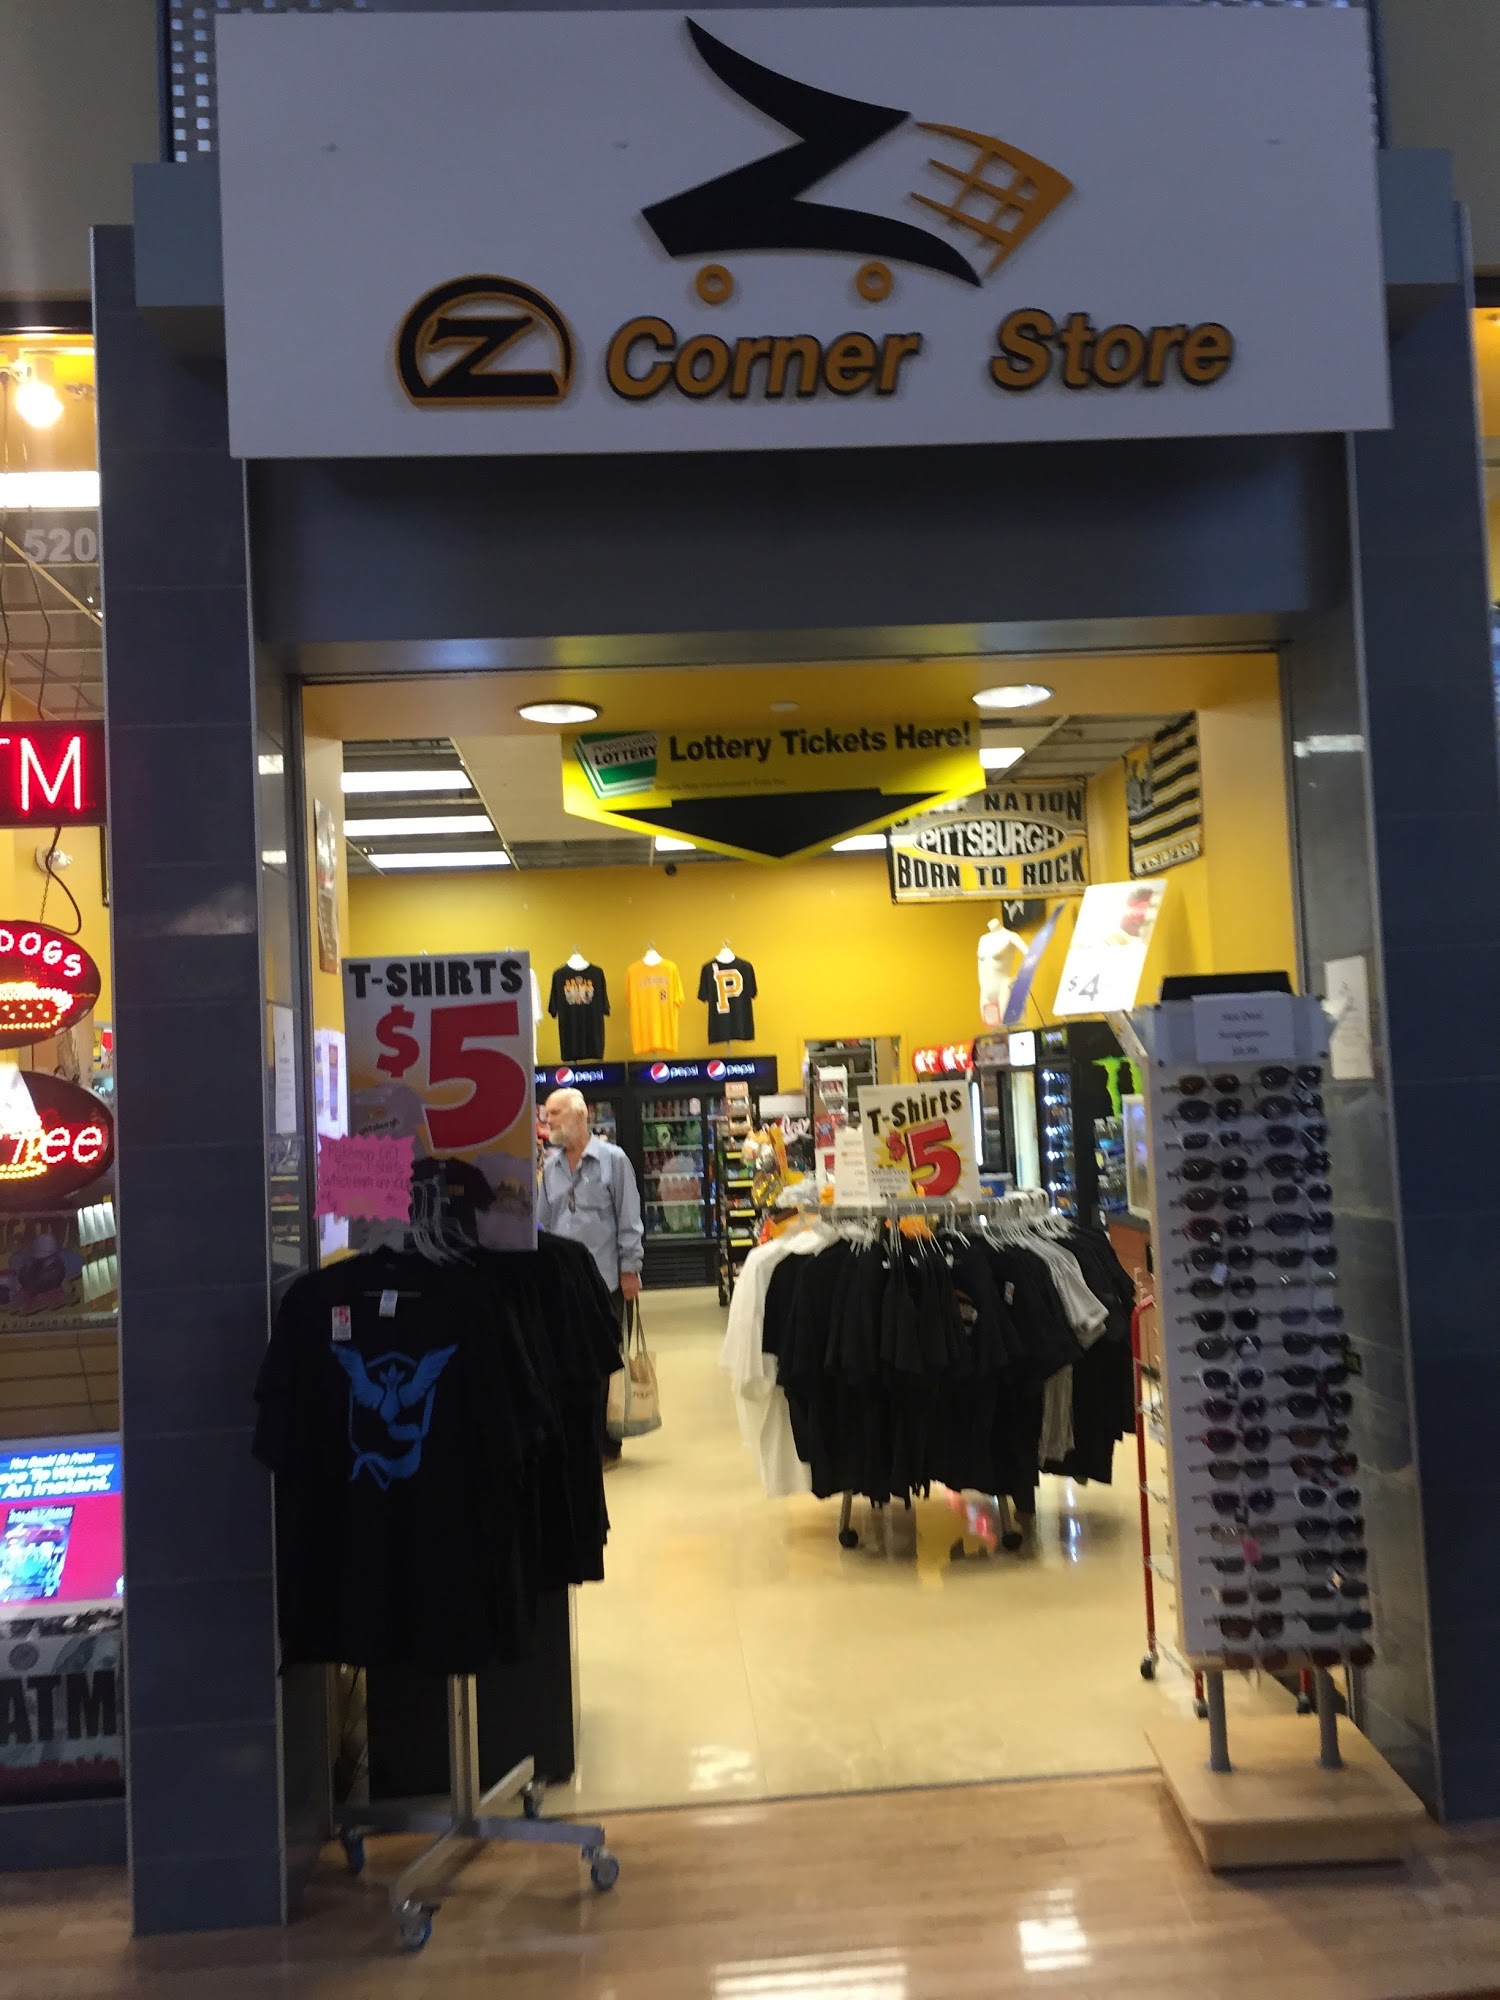 Z Corner Store